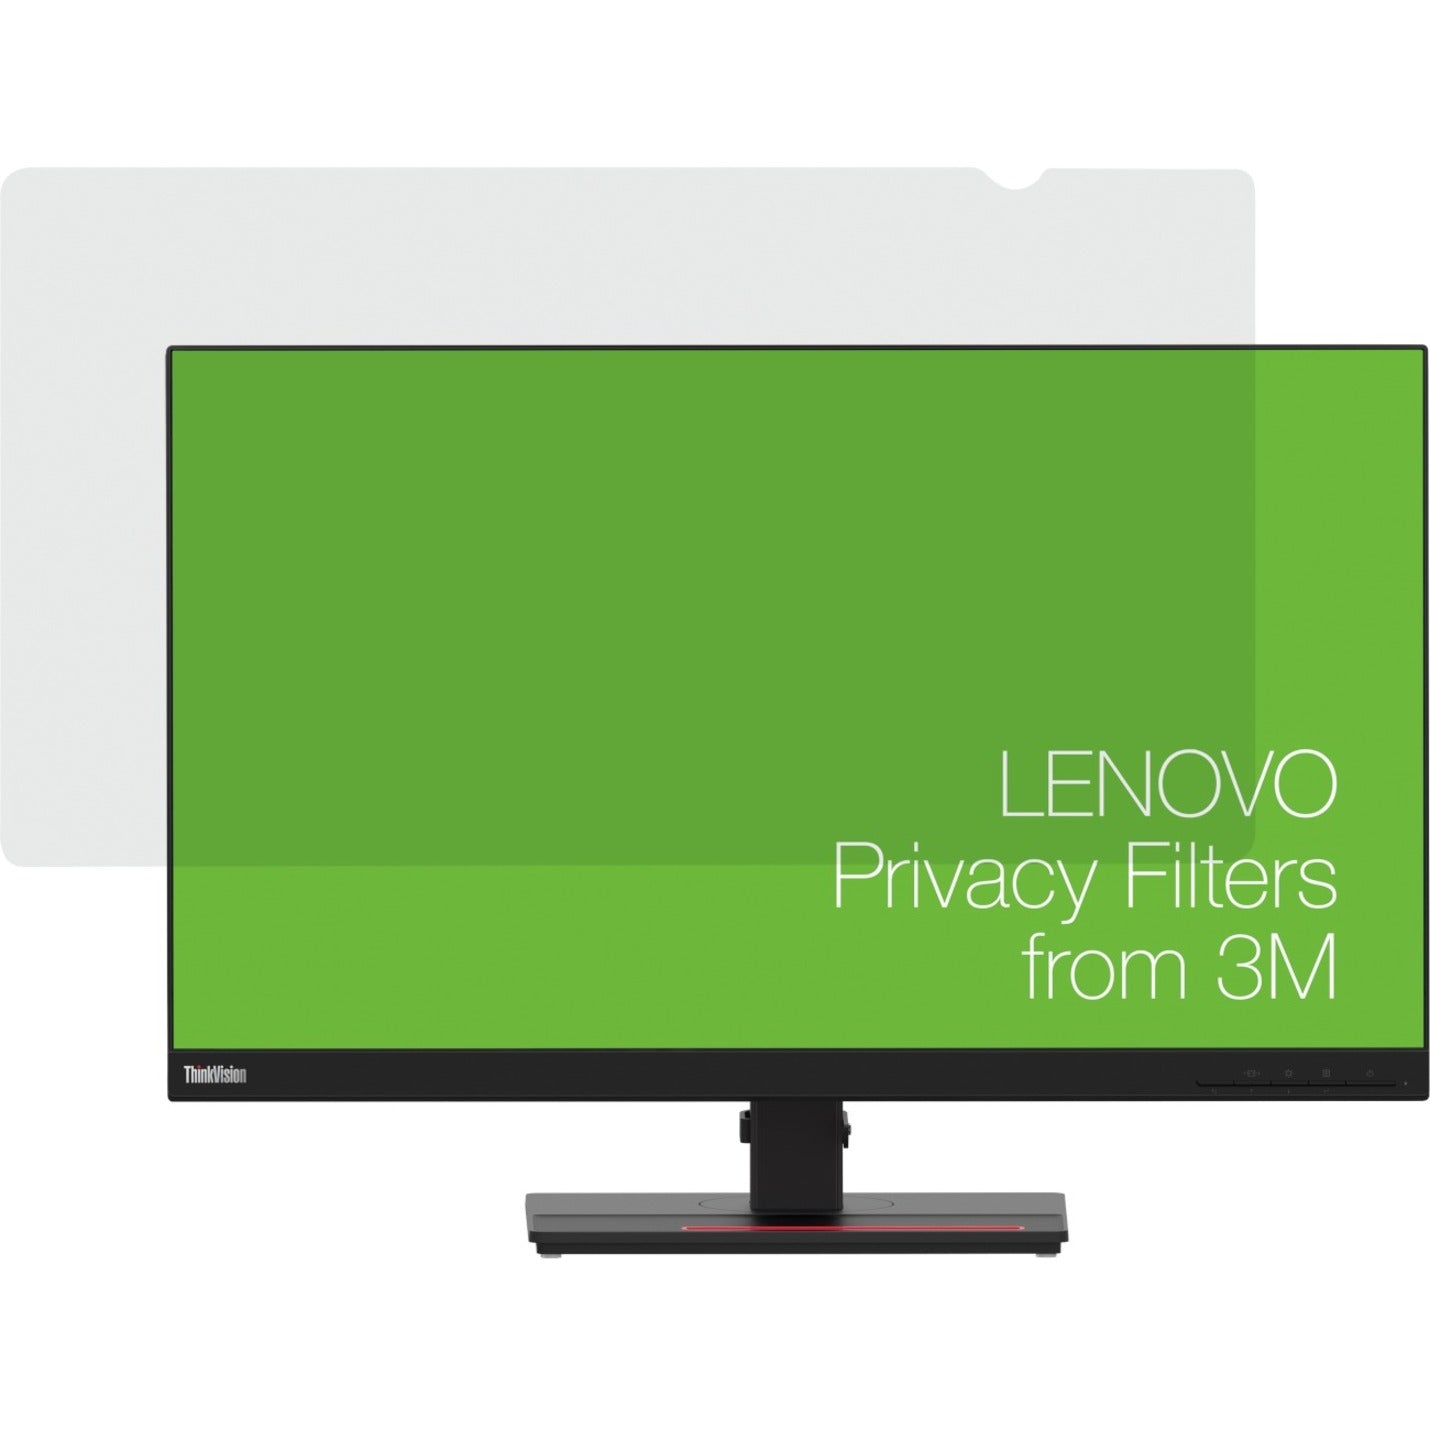 Lenovo 4XJ1D33882 Filtro per la privacy Reversibile Facile da pulire Facile da applicare Privacy.